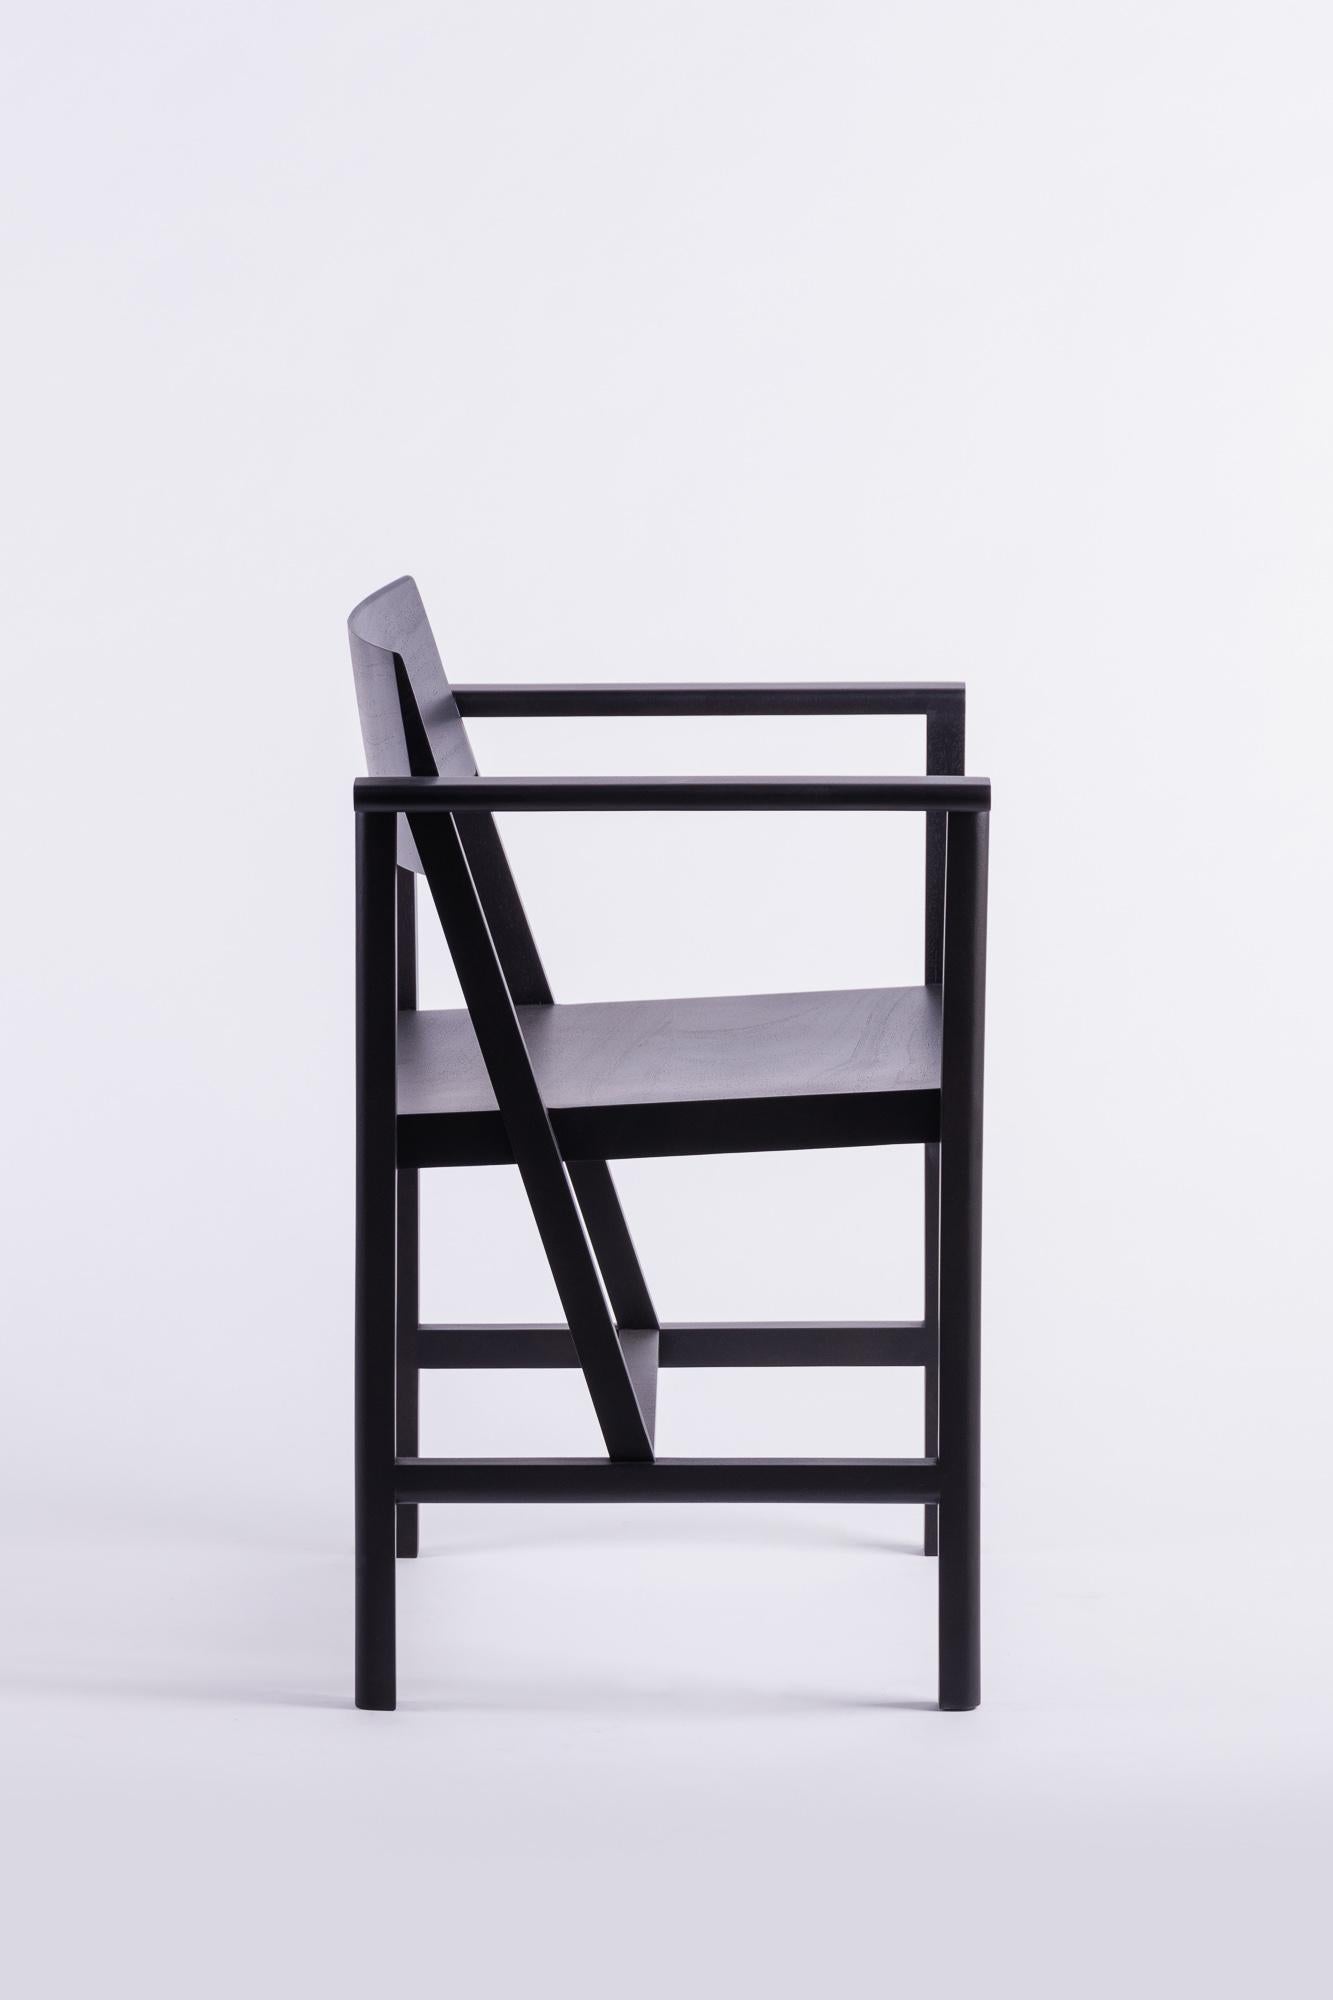 Der Phaka-Stuhl ist eine Suche nach der einfachsten Struktur, ein wesentliches Merkmal eines guten Stuhls. Die reine, schlichte Ästhetik wird durch außergewöhnliche Handwerkskunst erzeugt. Für beste Proportionen sorgt das Design des Stuhls mit dem